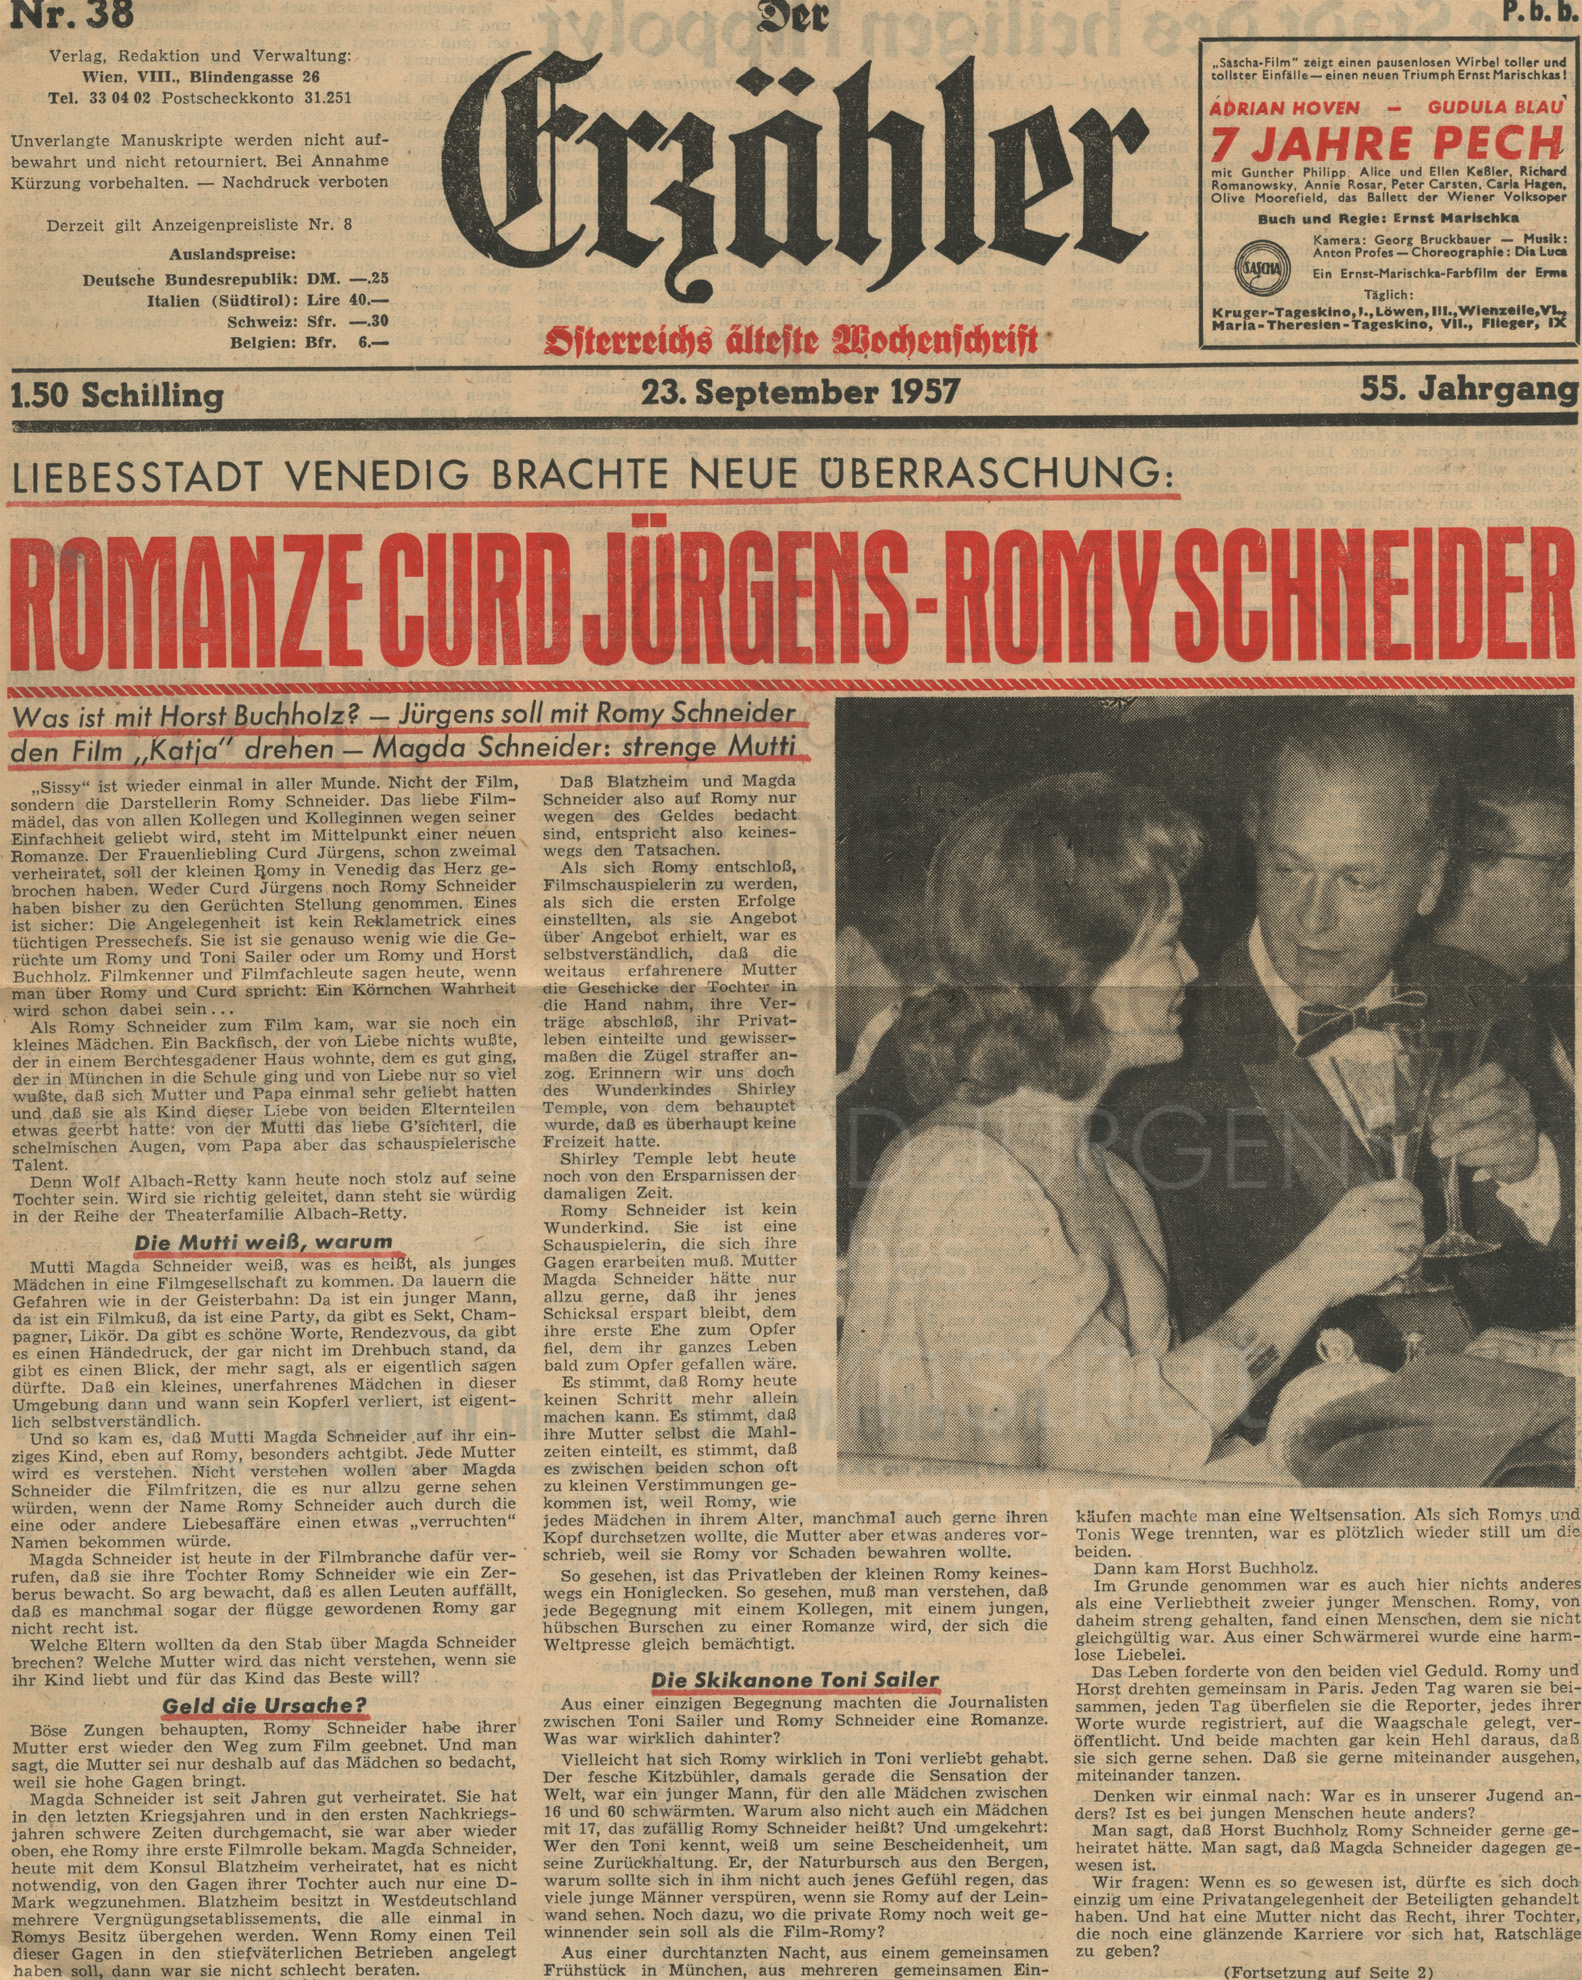 Der Erzähler: "Romanze Curd Jürgens - Romy Schneider", 23.9.1957